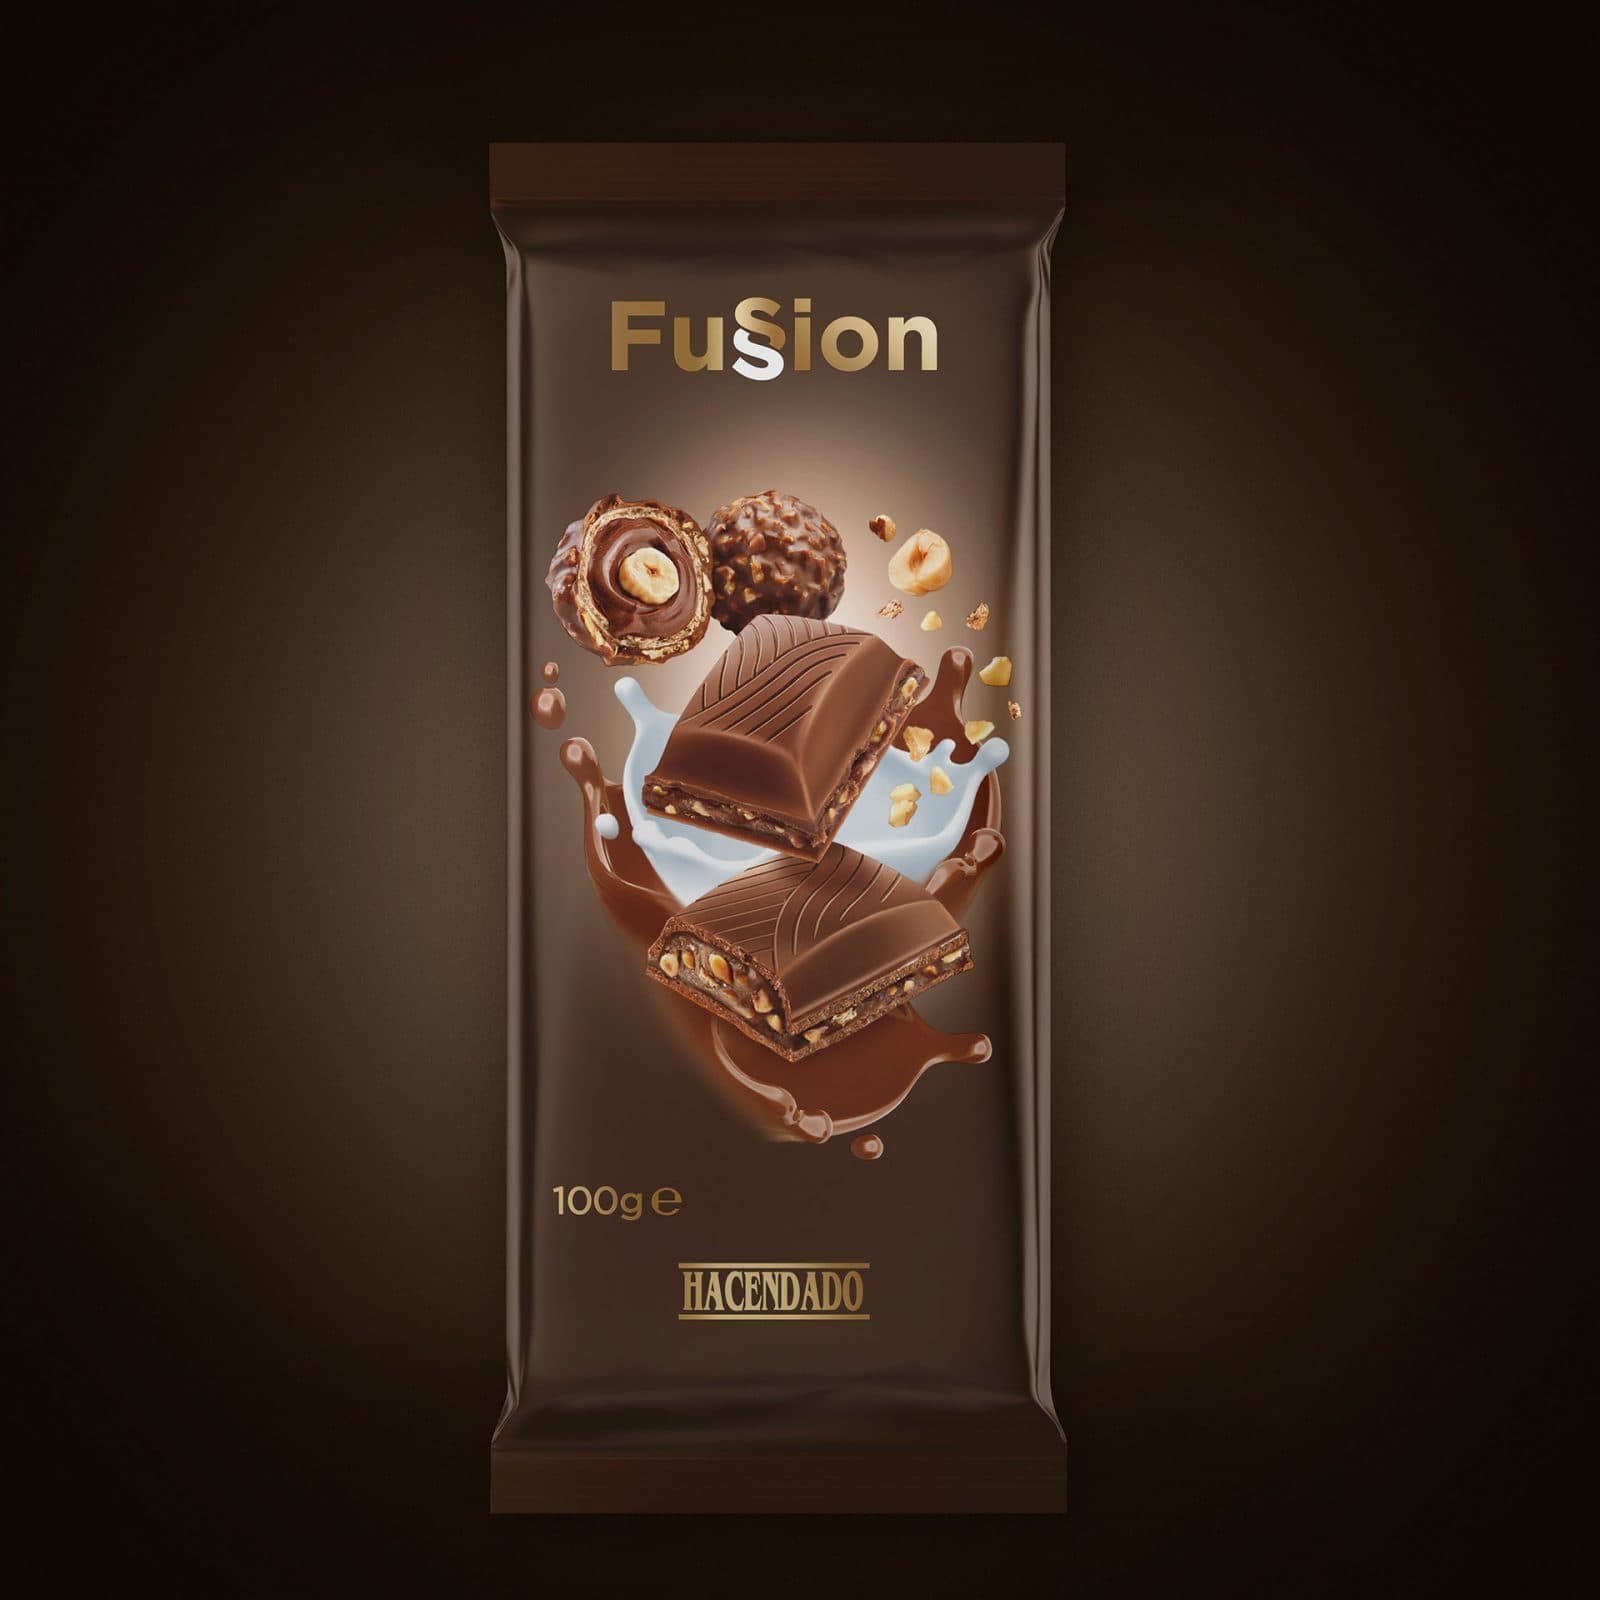 Chocolates Hacendado - fussion delizze - Mercadona